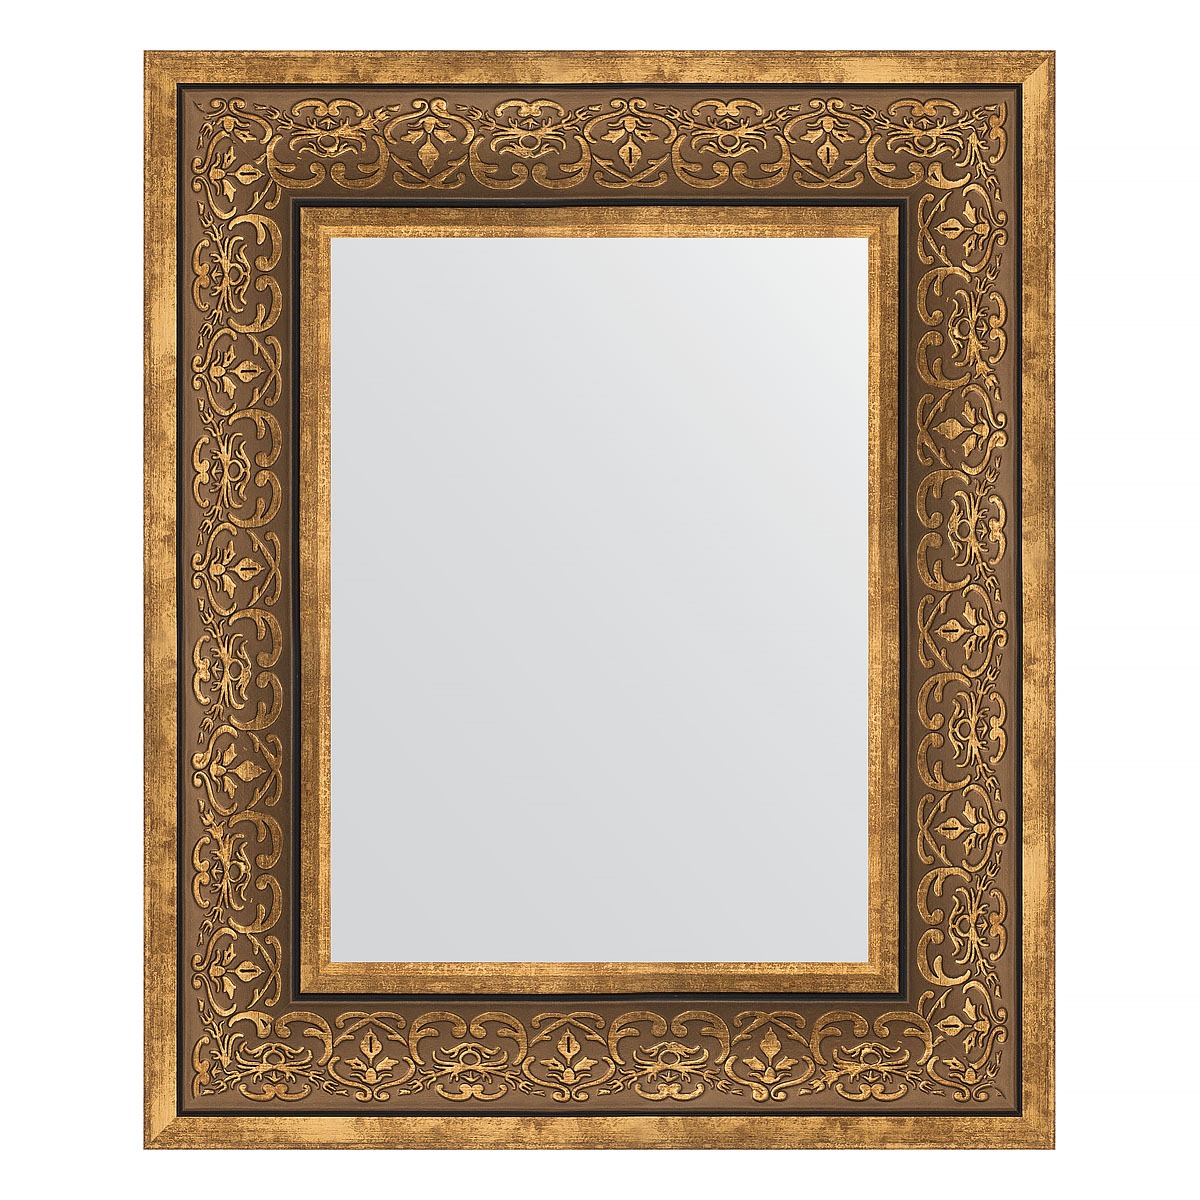 Зеркало в багетной раме Evoform вензель бронзовый 101 мм 49х59 см зеркало 79х109 см вензель бронзовый evoform exclusive by 3474